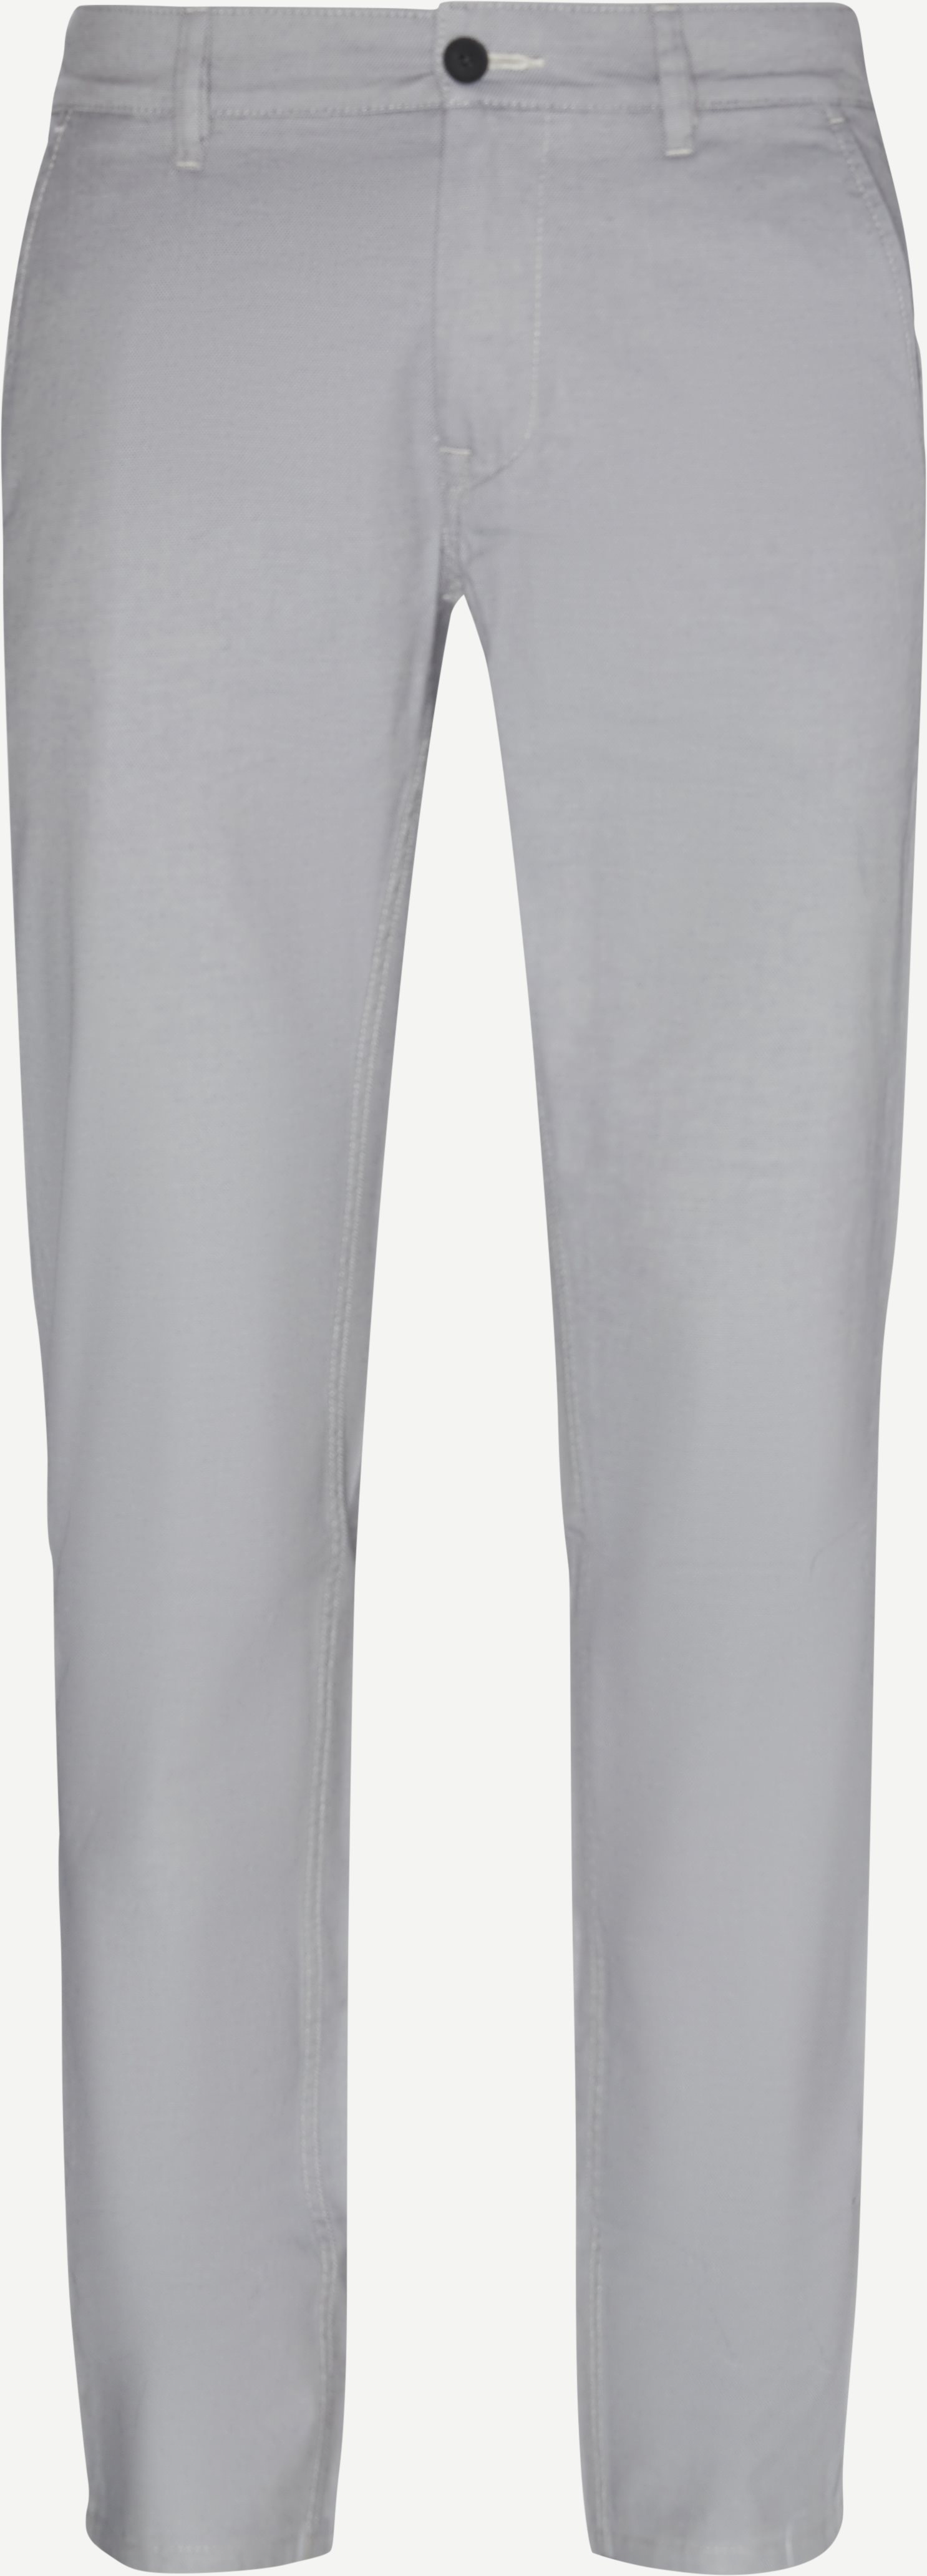 Schino-Slim Chino - Trousers - Slim fit - Grey